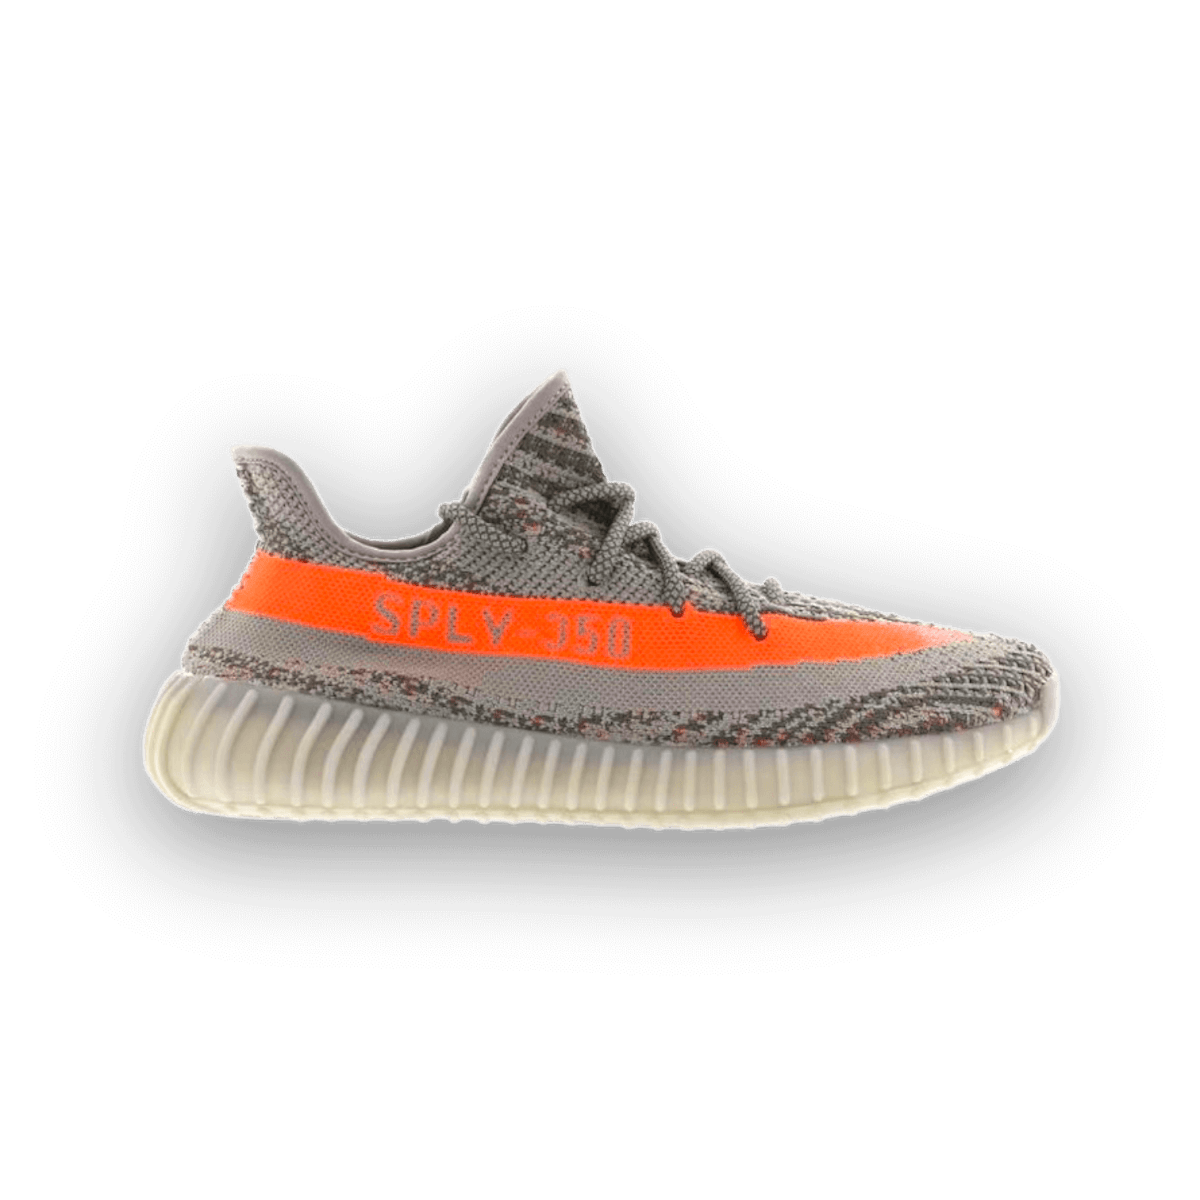 Yeezy Boost 350 V2 Beluga Reflective - Low Sneaker - Jawns on Fire Sneakers & Streetwear